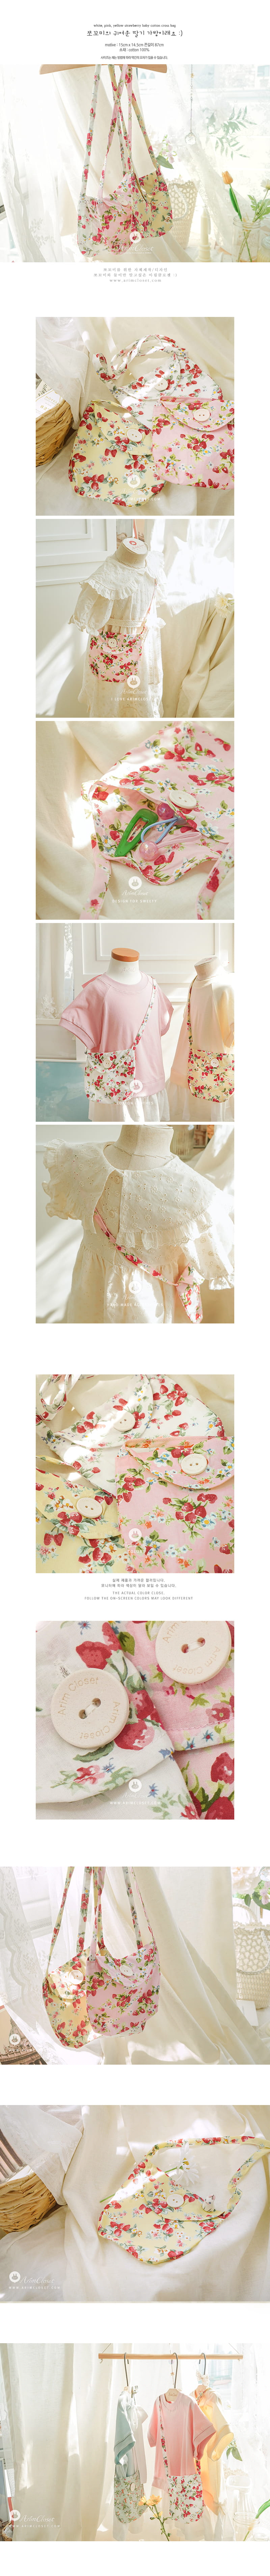 Arim Closet - Korean Baby Fashion - #babyfever - Strawberry Cross Bag - 3